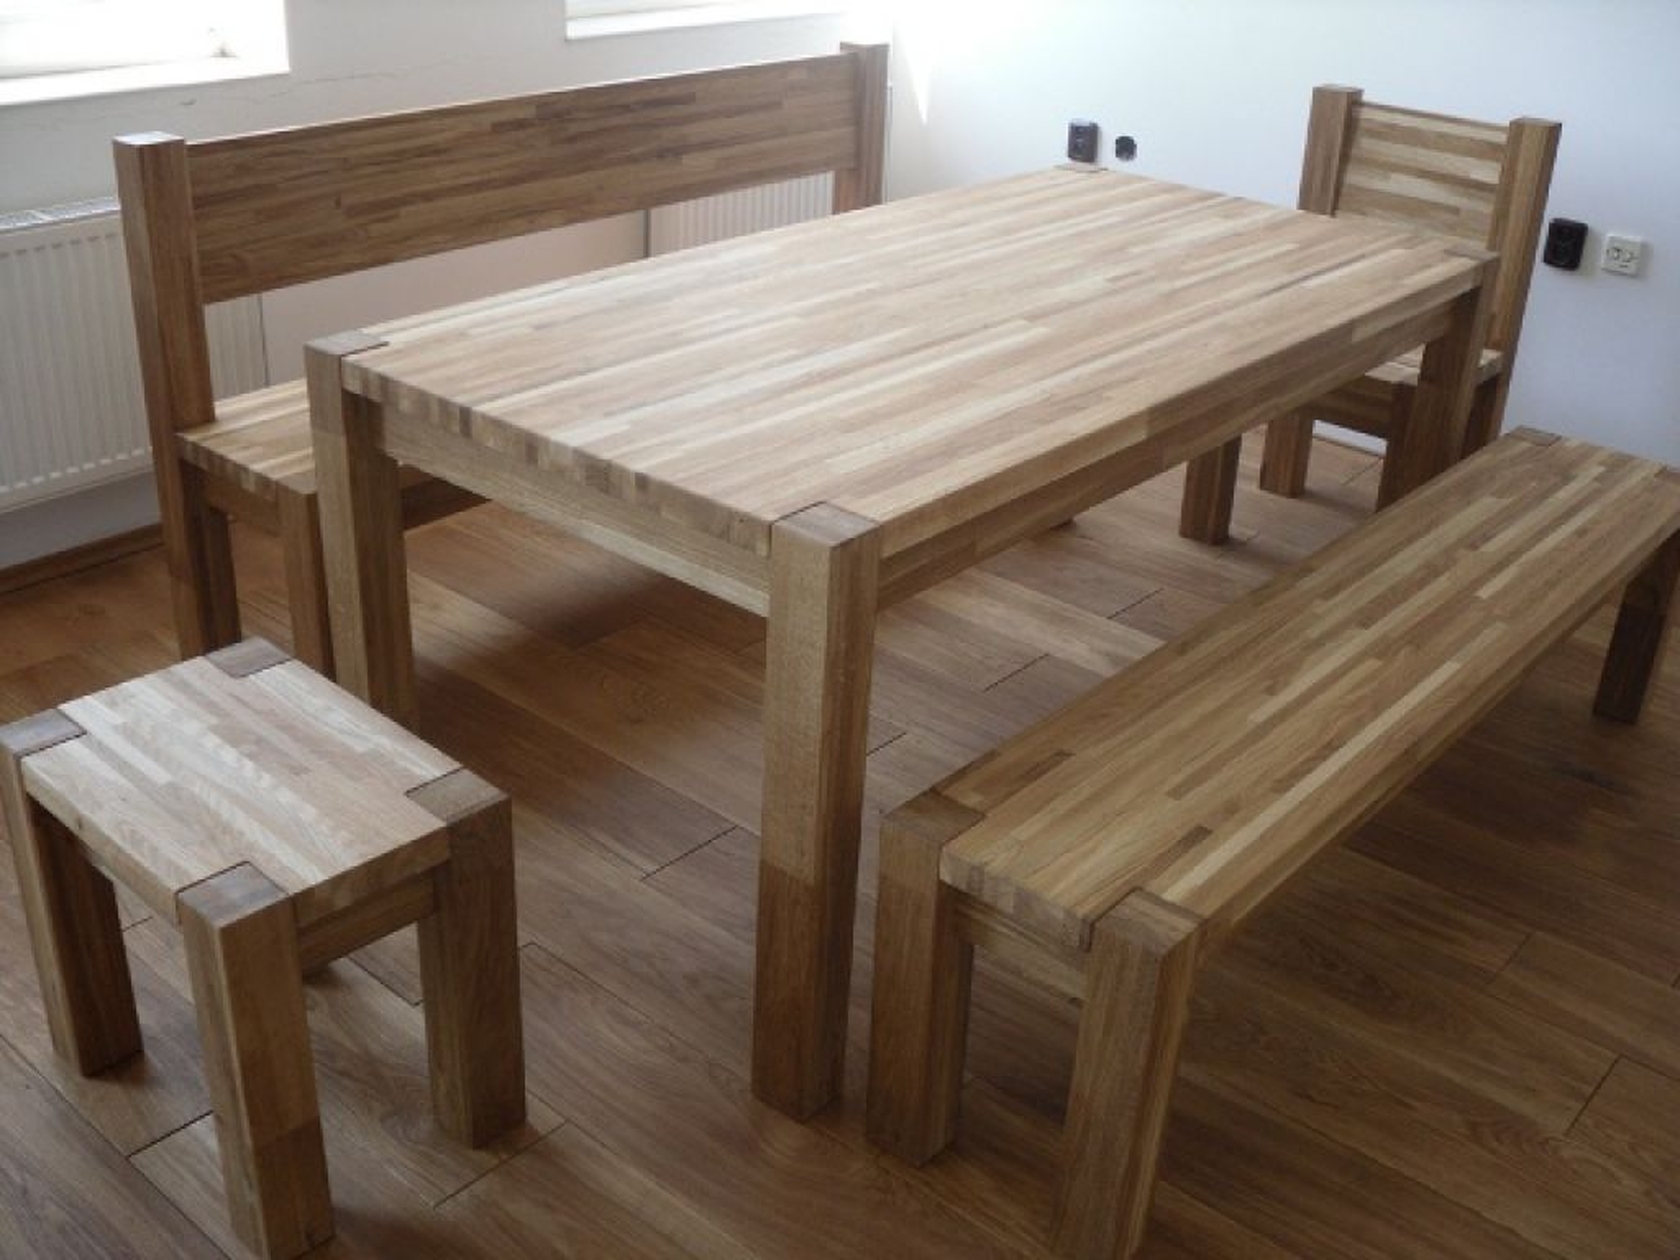 производство деревянной мебели своими руками